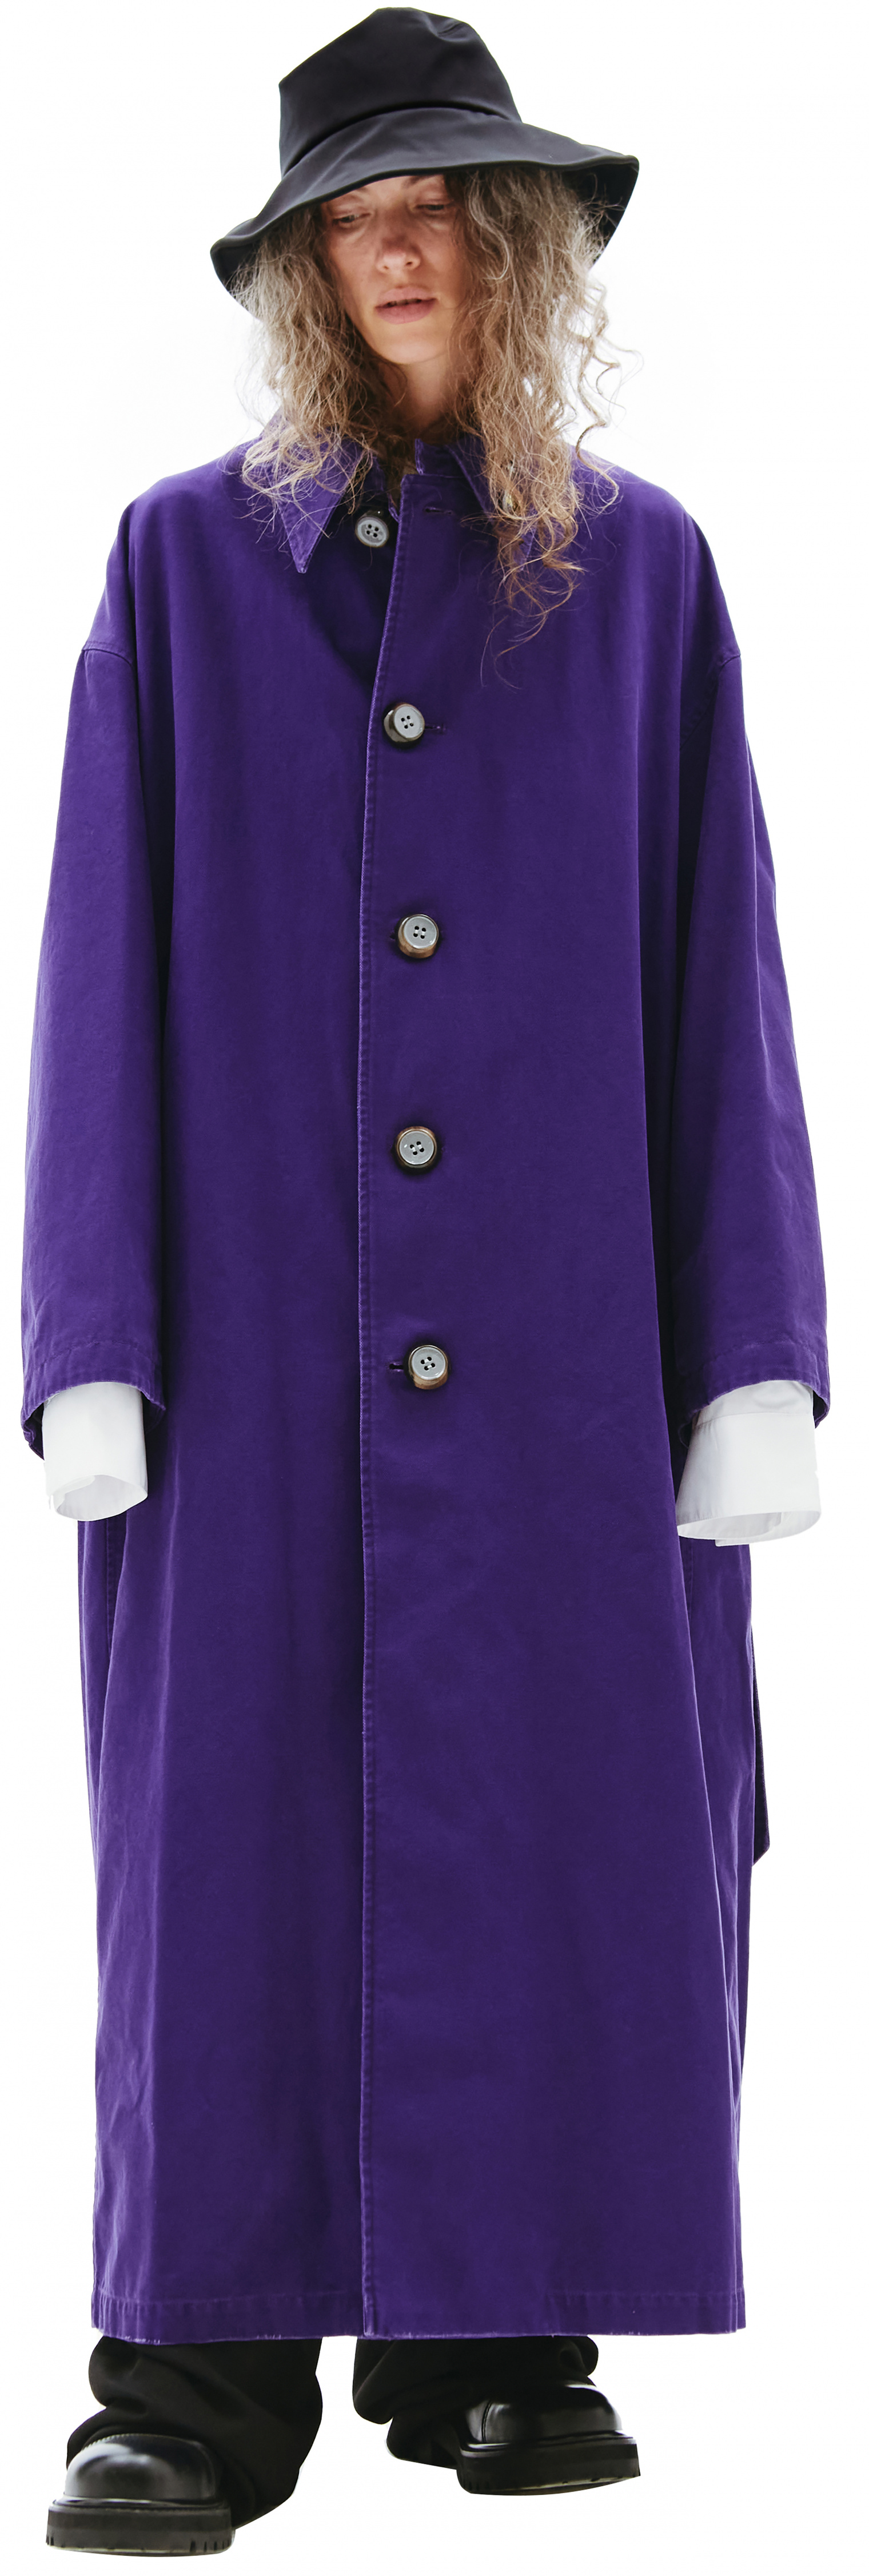 Buy Raf Simons women purple oversize coat for $3,985 online on 